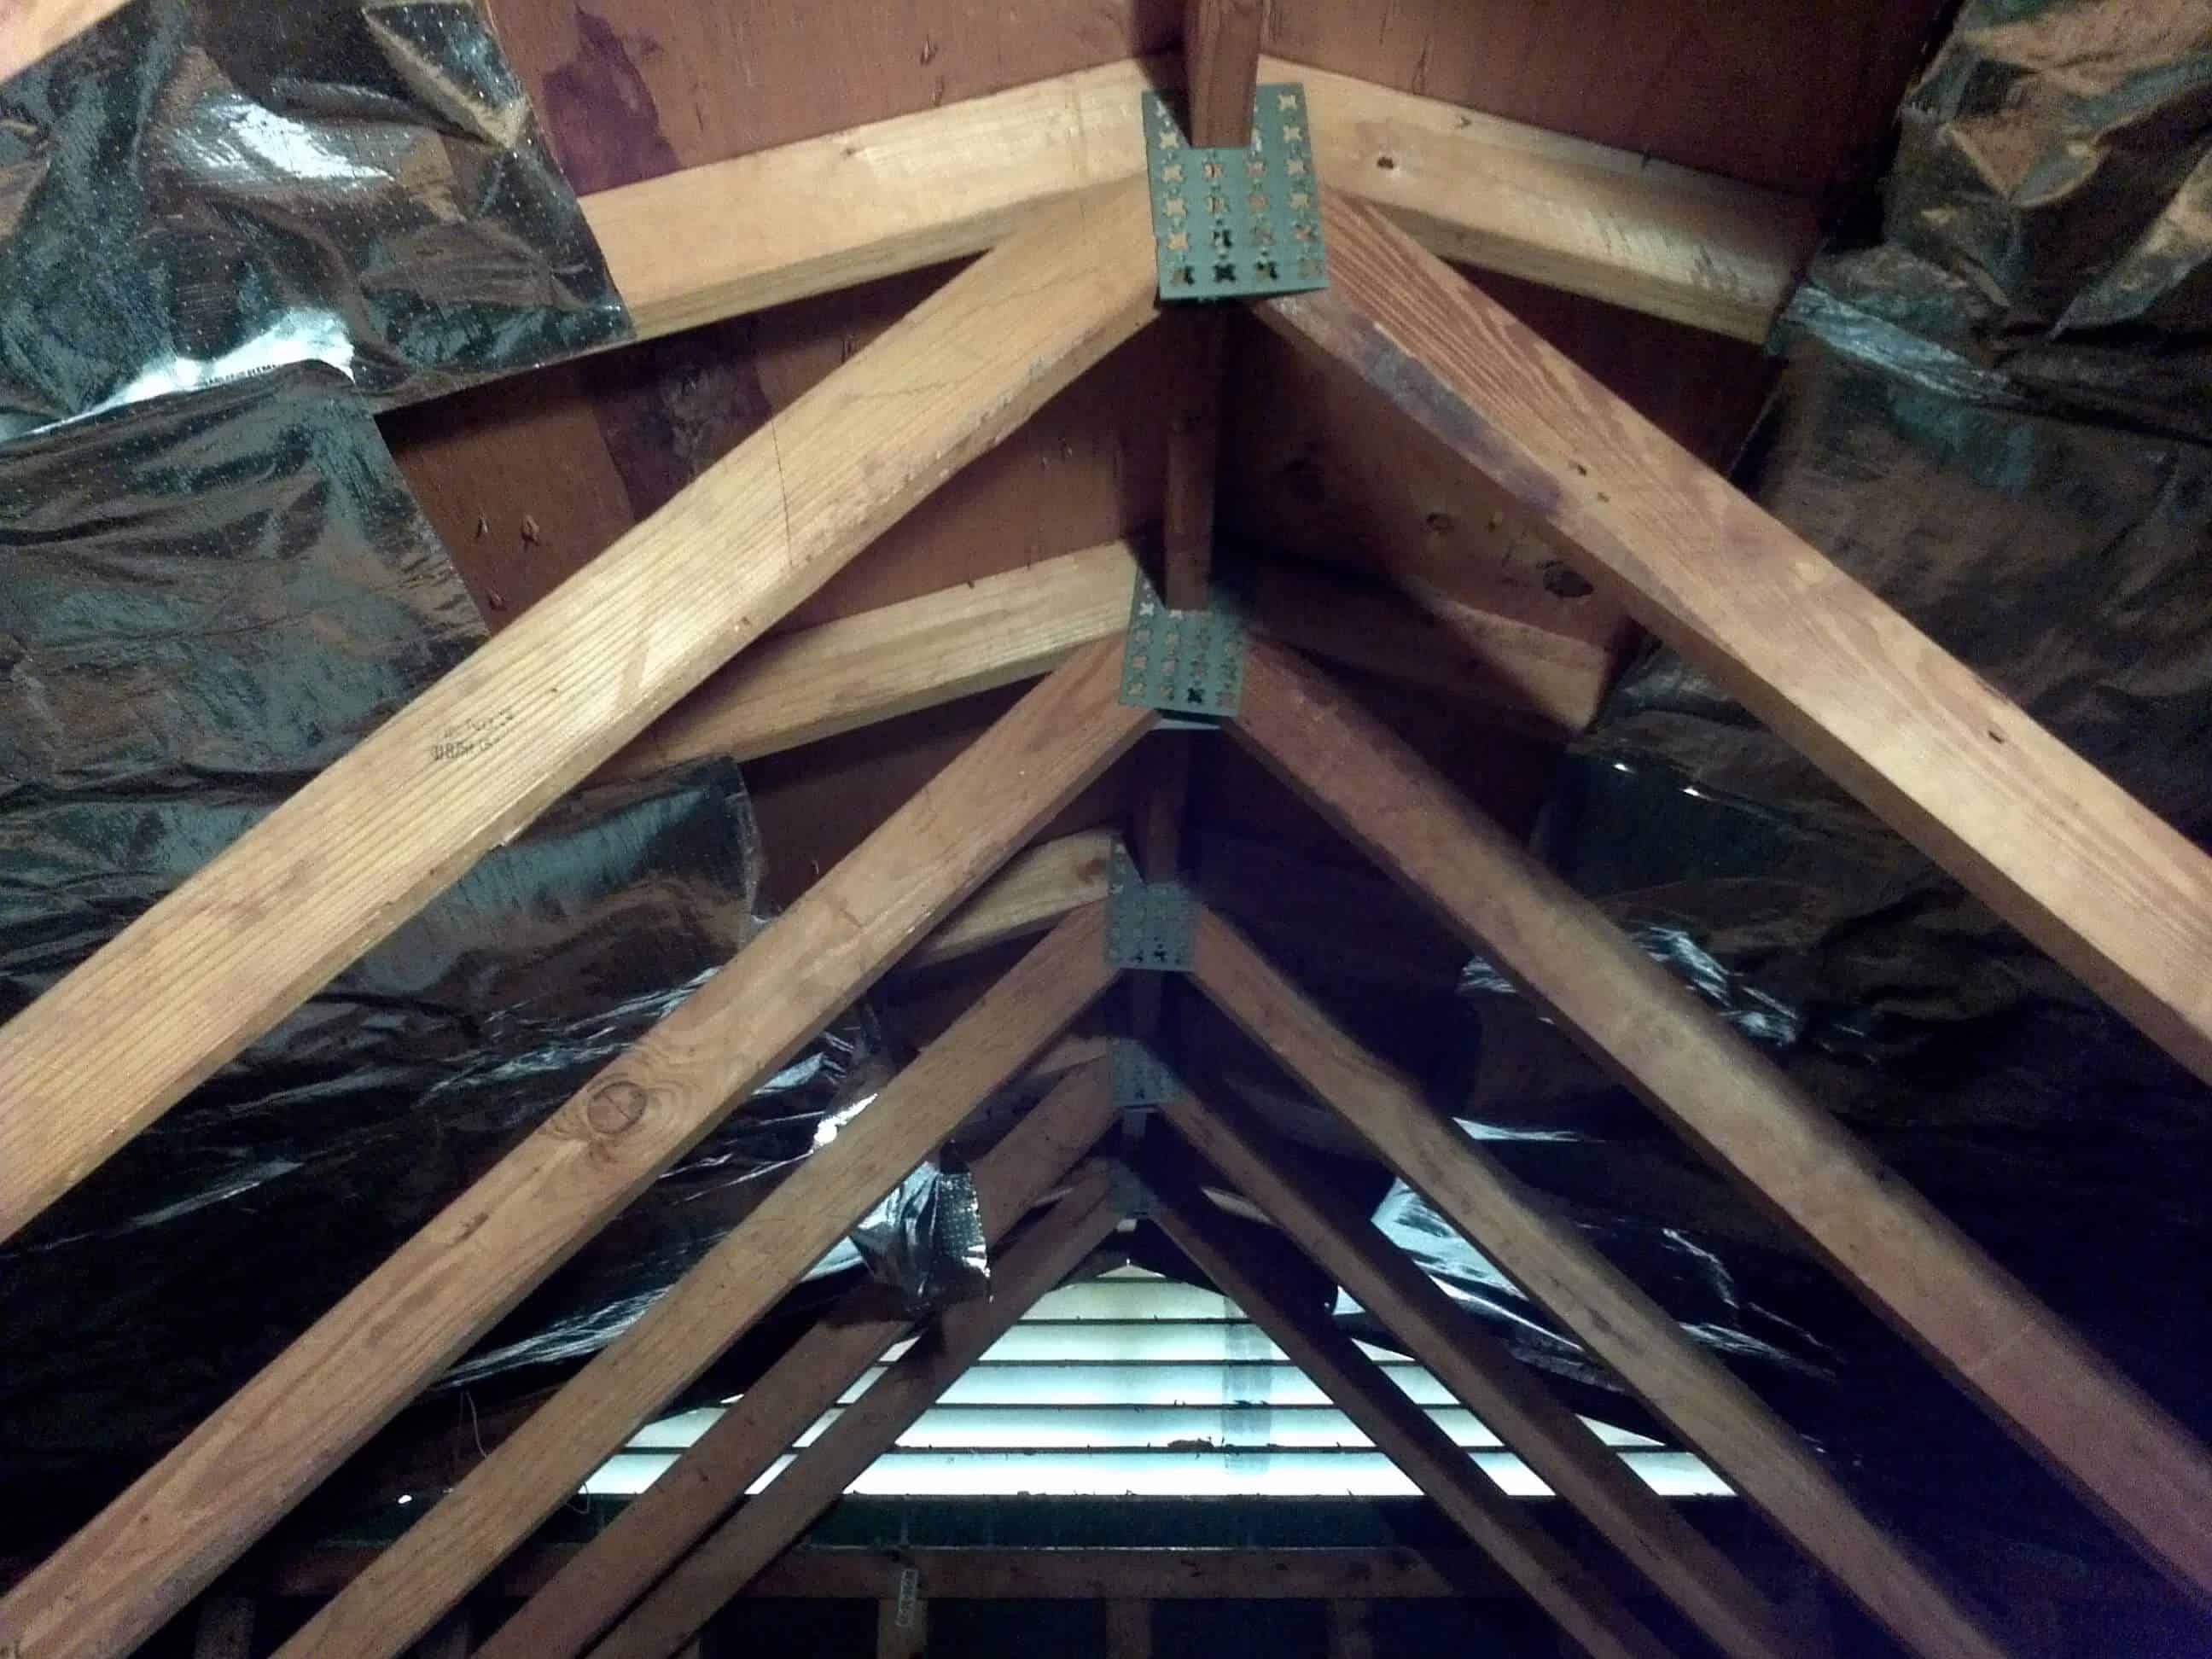 gallery-truss-attic-installs-atticfoil-radiant-barrier-do-it